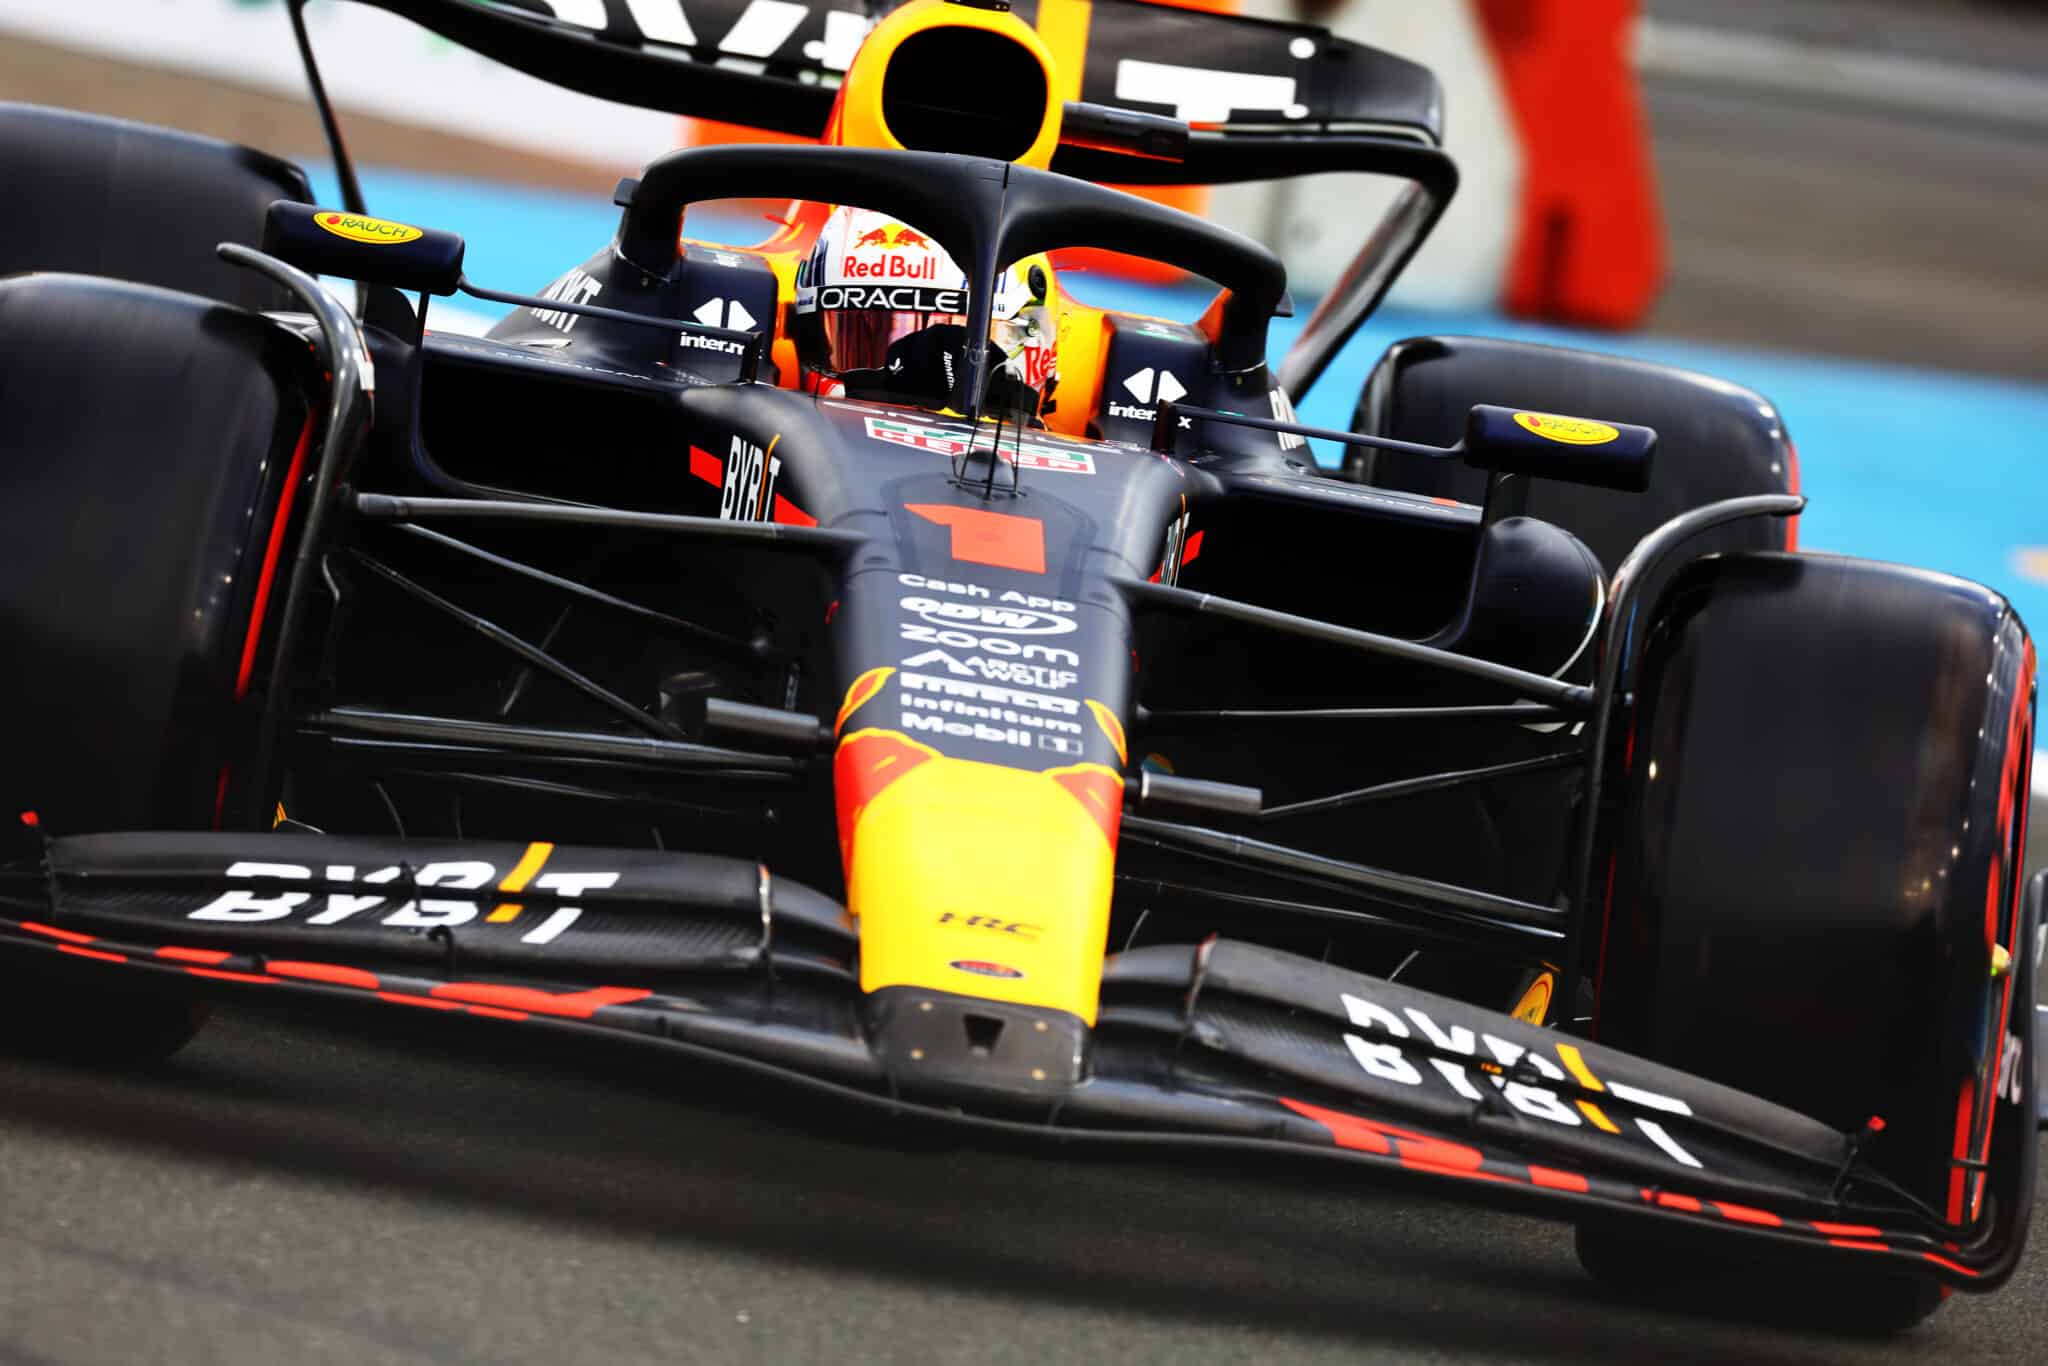 F1, GP Arabia Saudita: le soluzioni tecniche a basso carico aerodinamico portate dai vari team